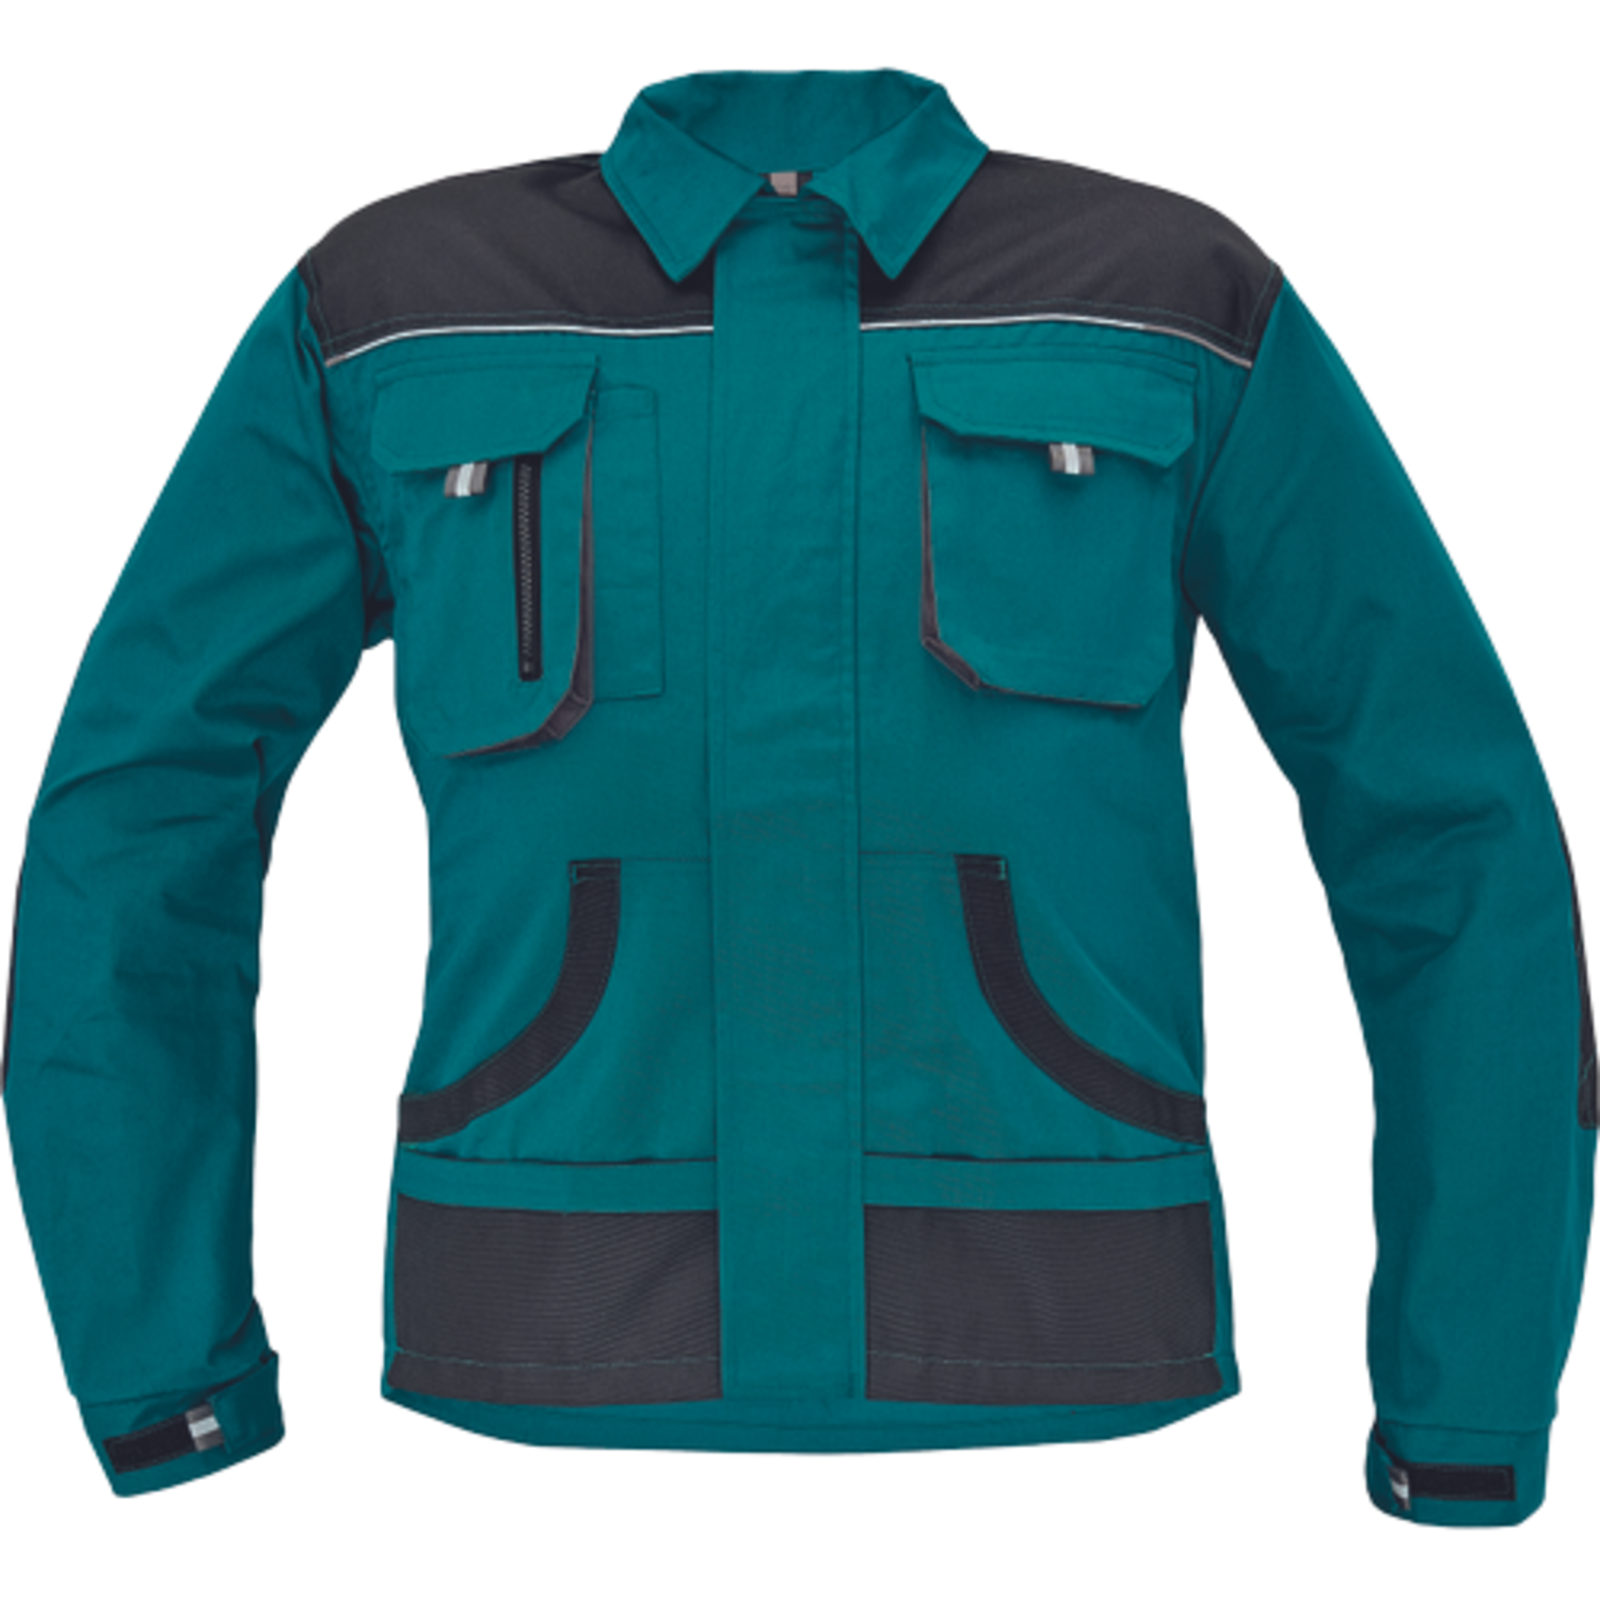 Odolná pracovná bunda Cerva FF Hans - veľkosť: 46, farba: zelená/antracit